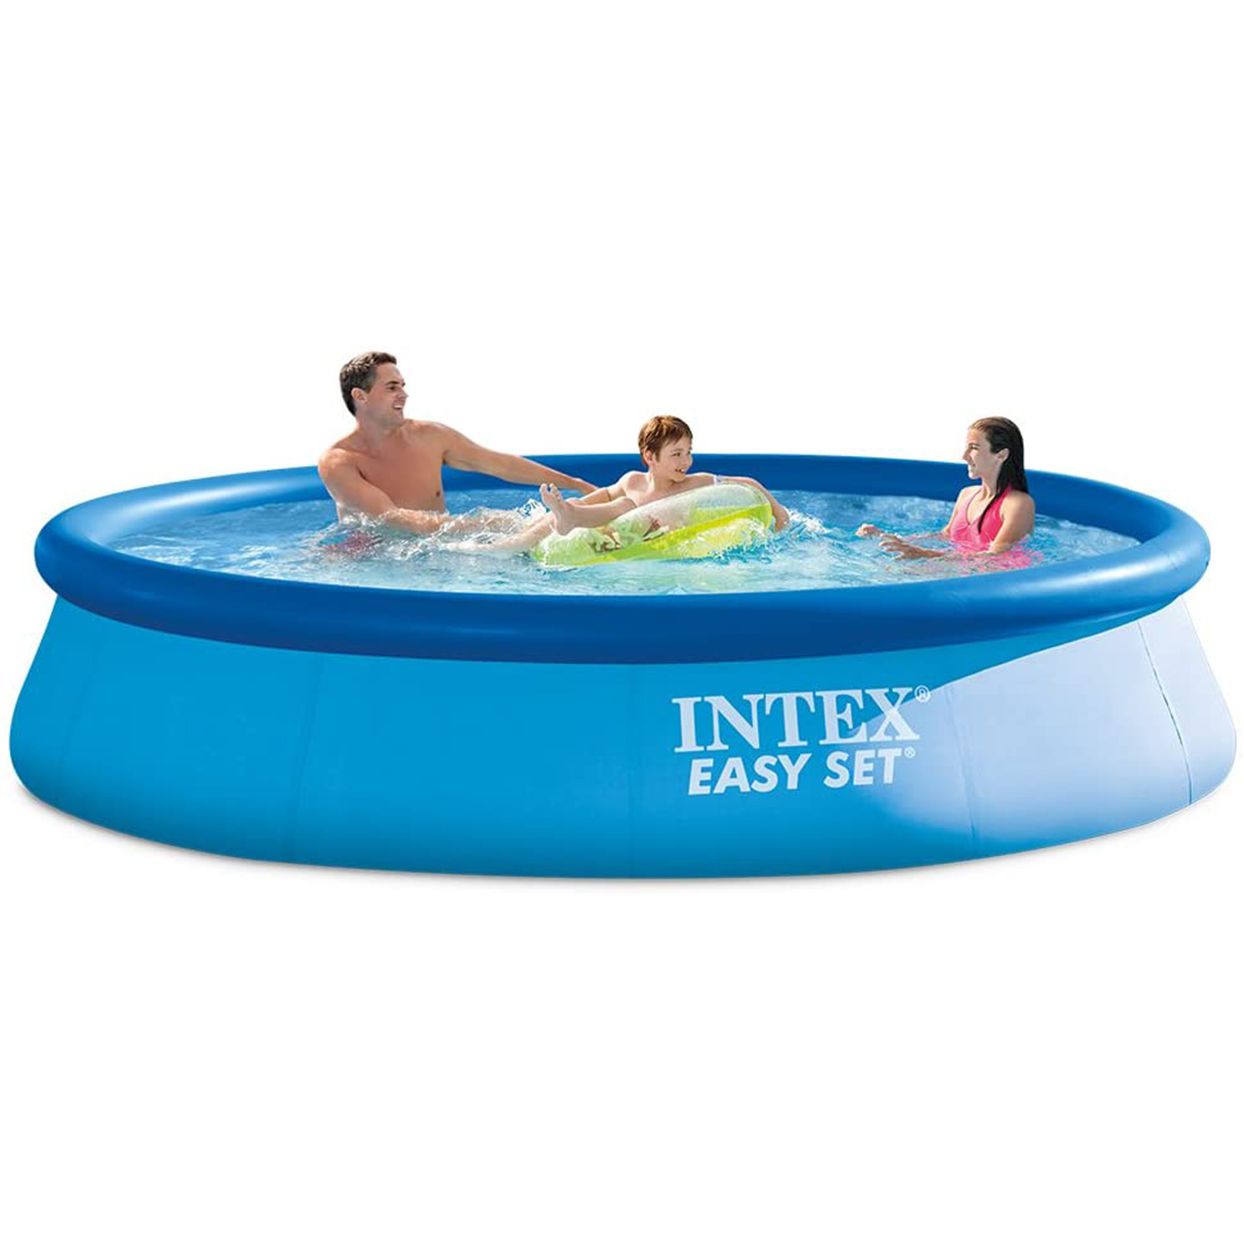 Intex easy pool set